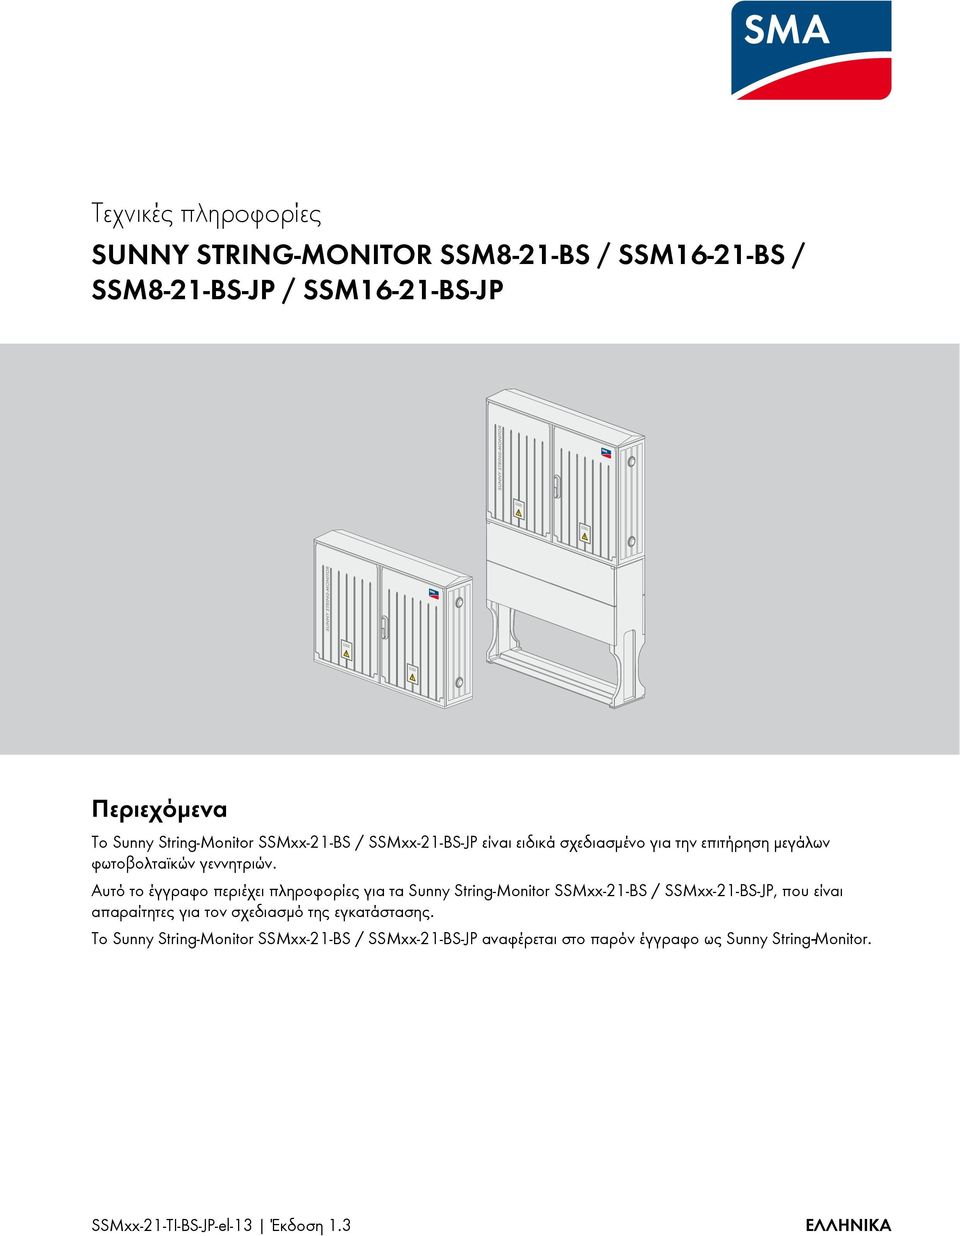 Αυτό το έγγραφο περιέχει πληροφορίες για τα Sunny String-Monitor SSMxx-21-BS / SSMxx-21-BS-JP, που είναι απαραίτητες για τον σχεδιασμό